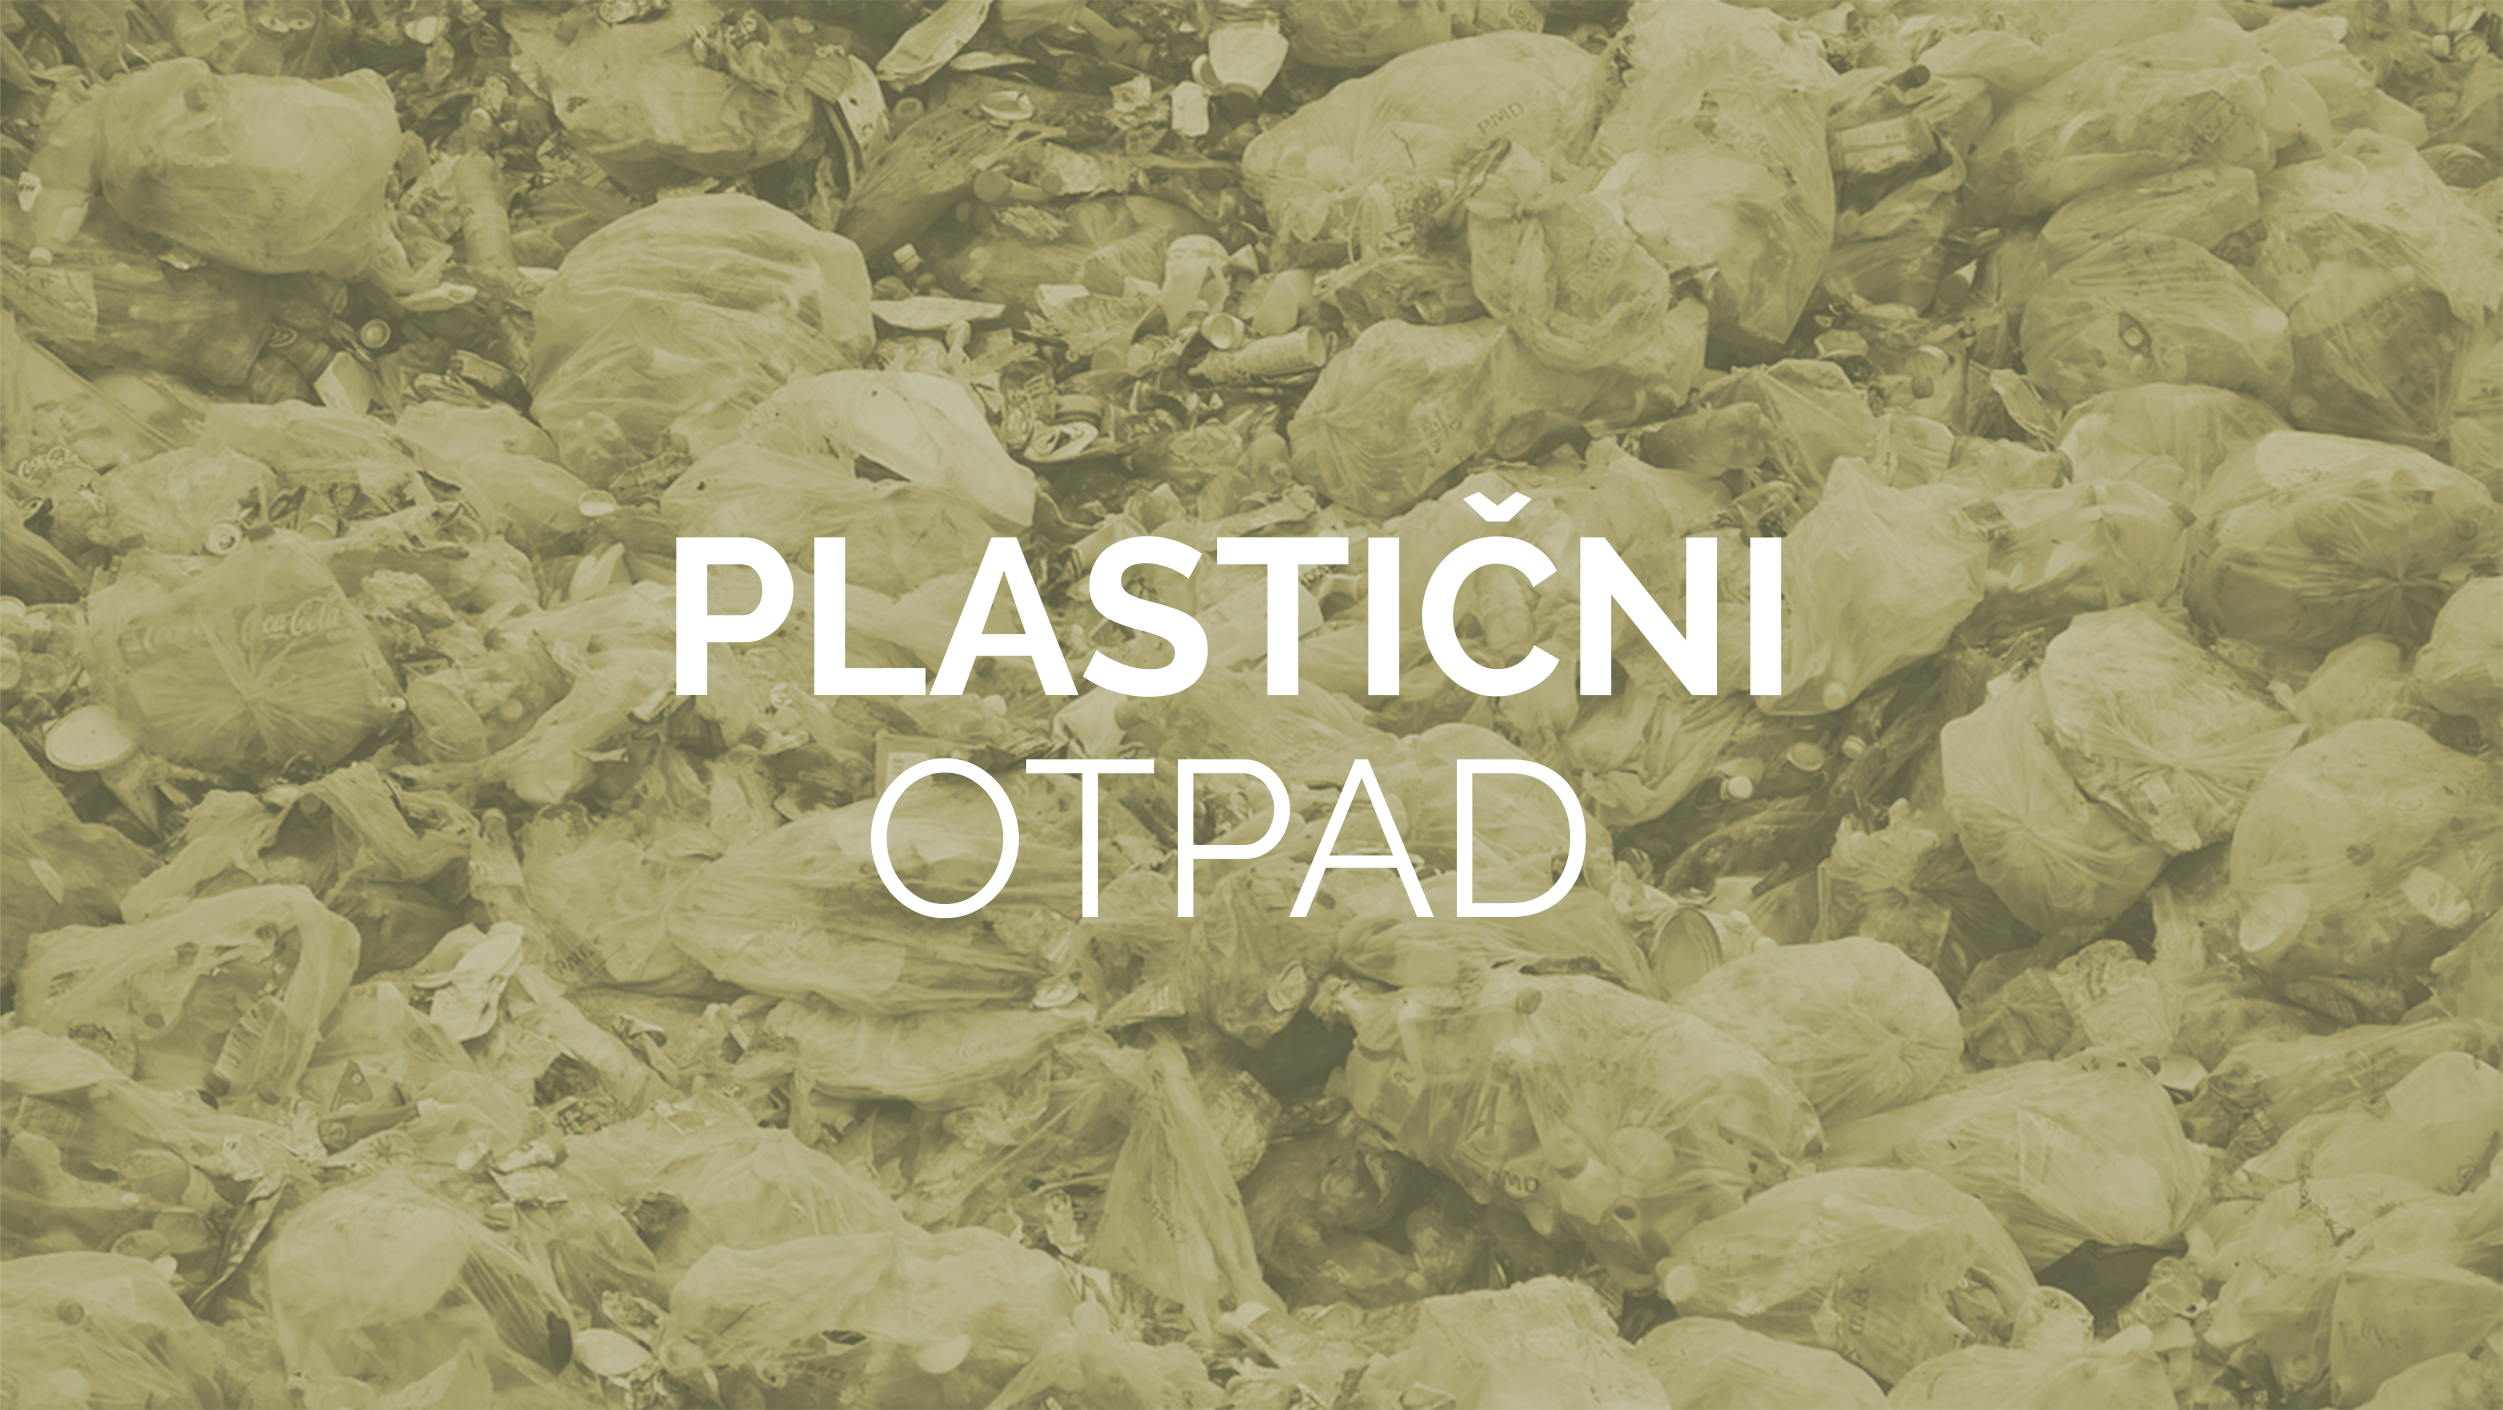 Plasticni otpad